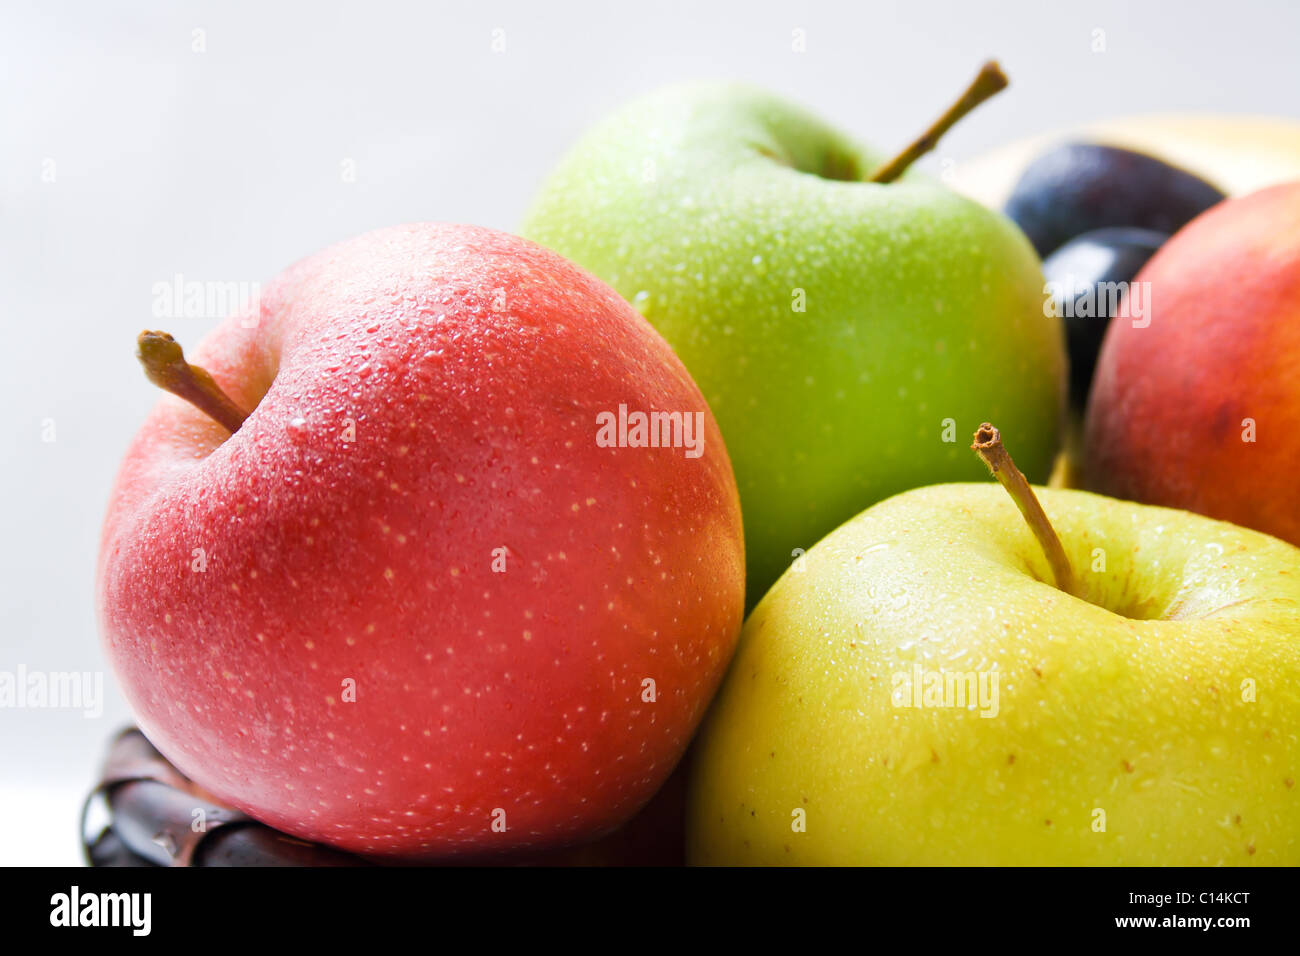 Apples. Stock Photo